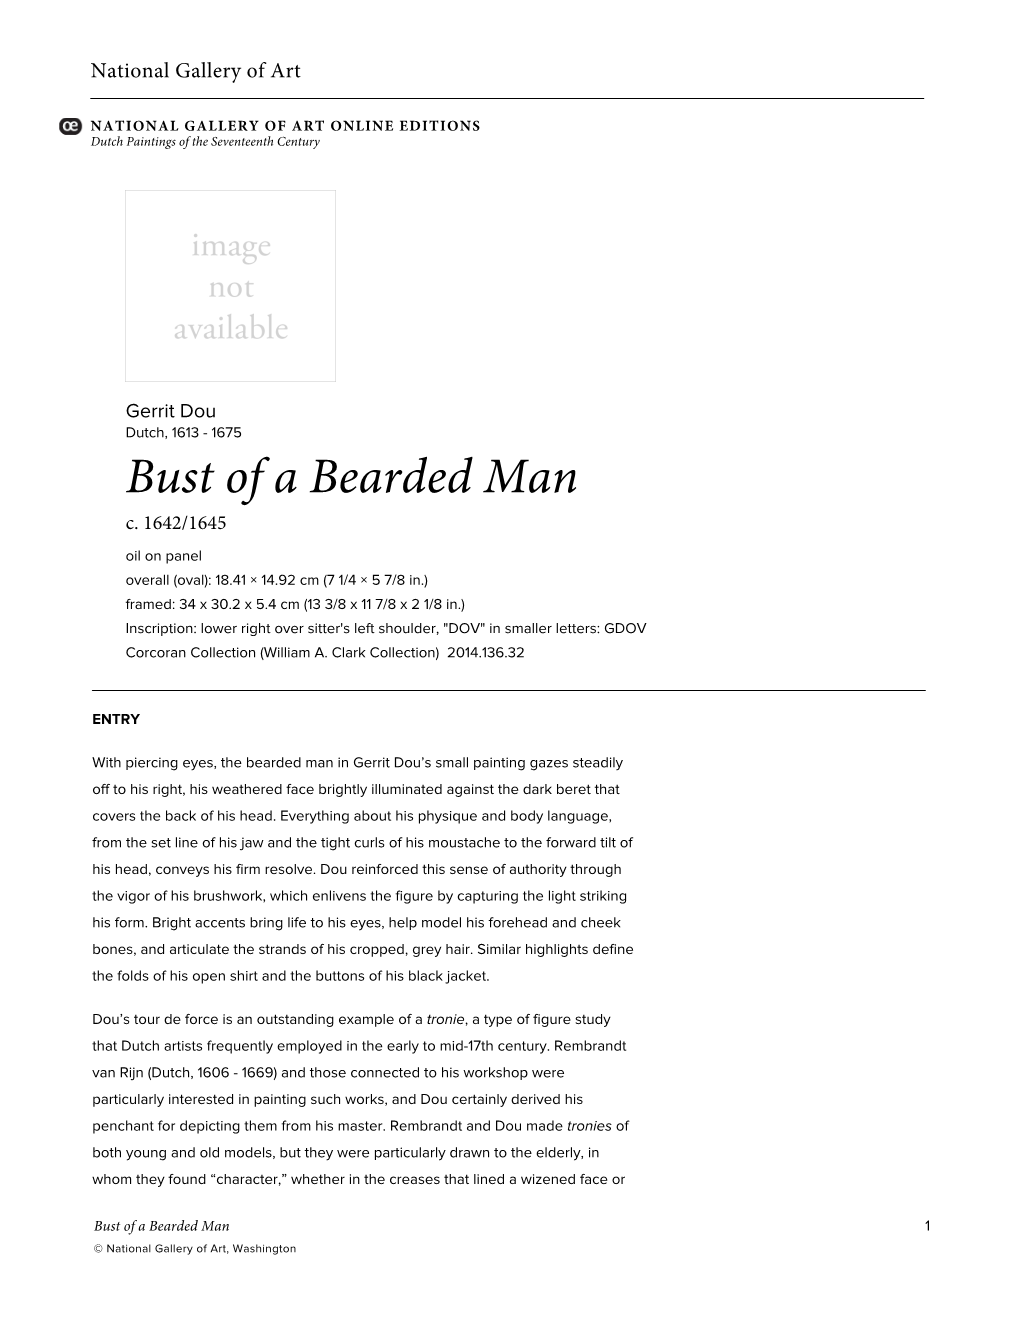 Bust of a Bearded Man C